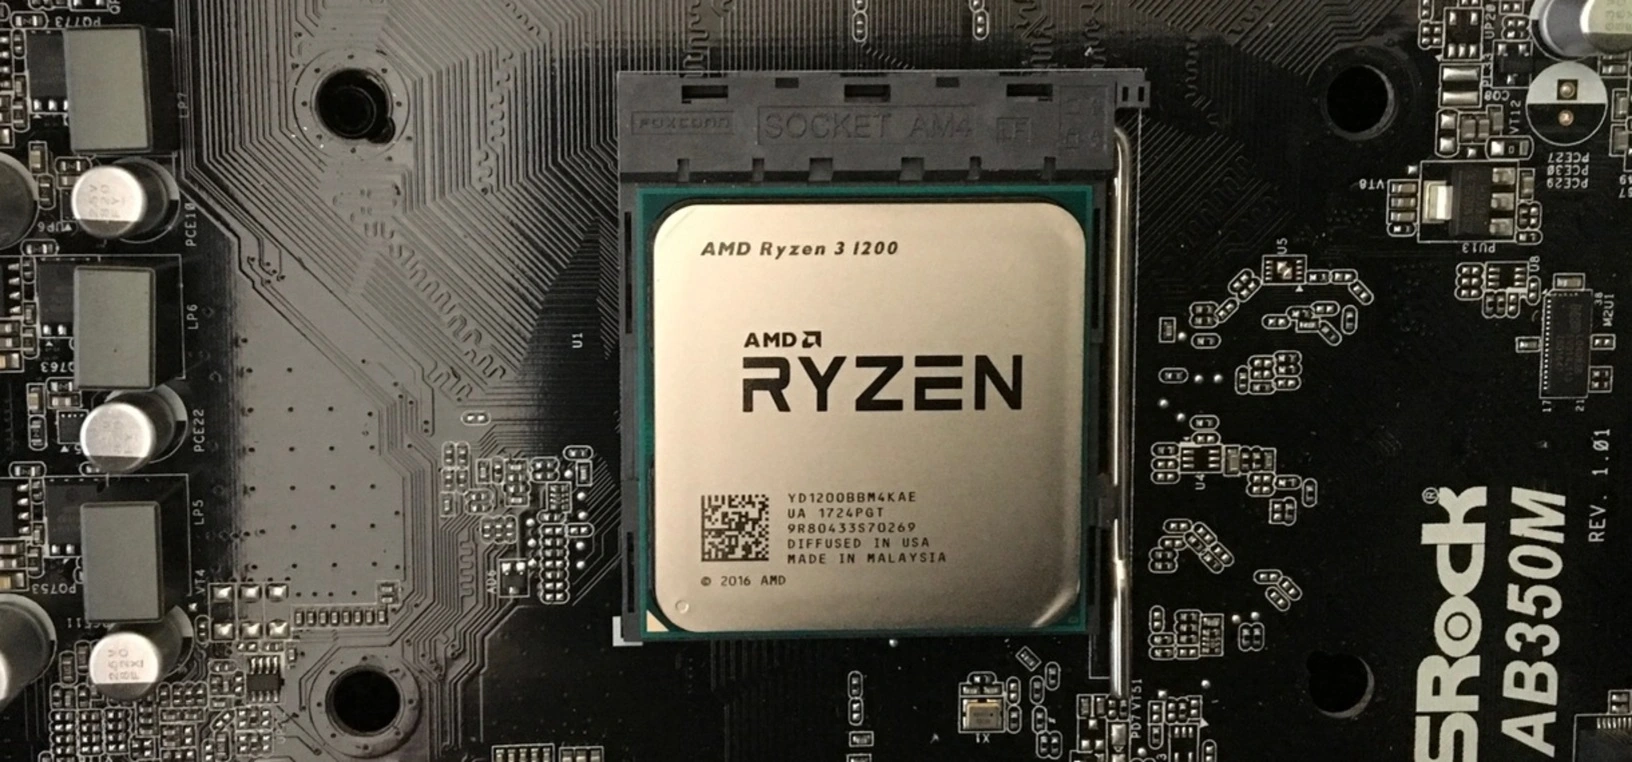 Райзен какой сокет. Ryzen 3 1200. Процессор AMD Ryazan 3 1200. Процессор AMD Ryzen 3 1200 - 3,1 ГГЦ. AMD Ryzen 3 1200 Box.